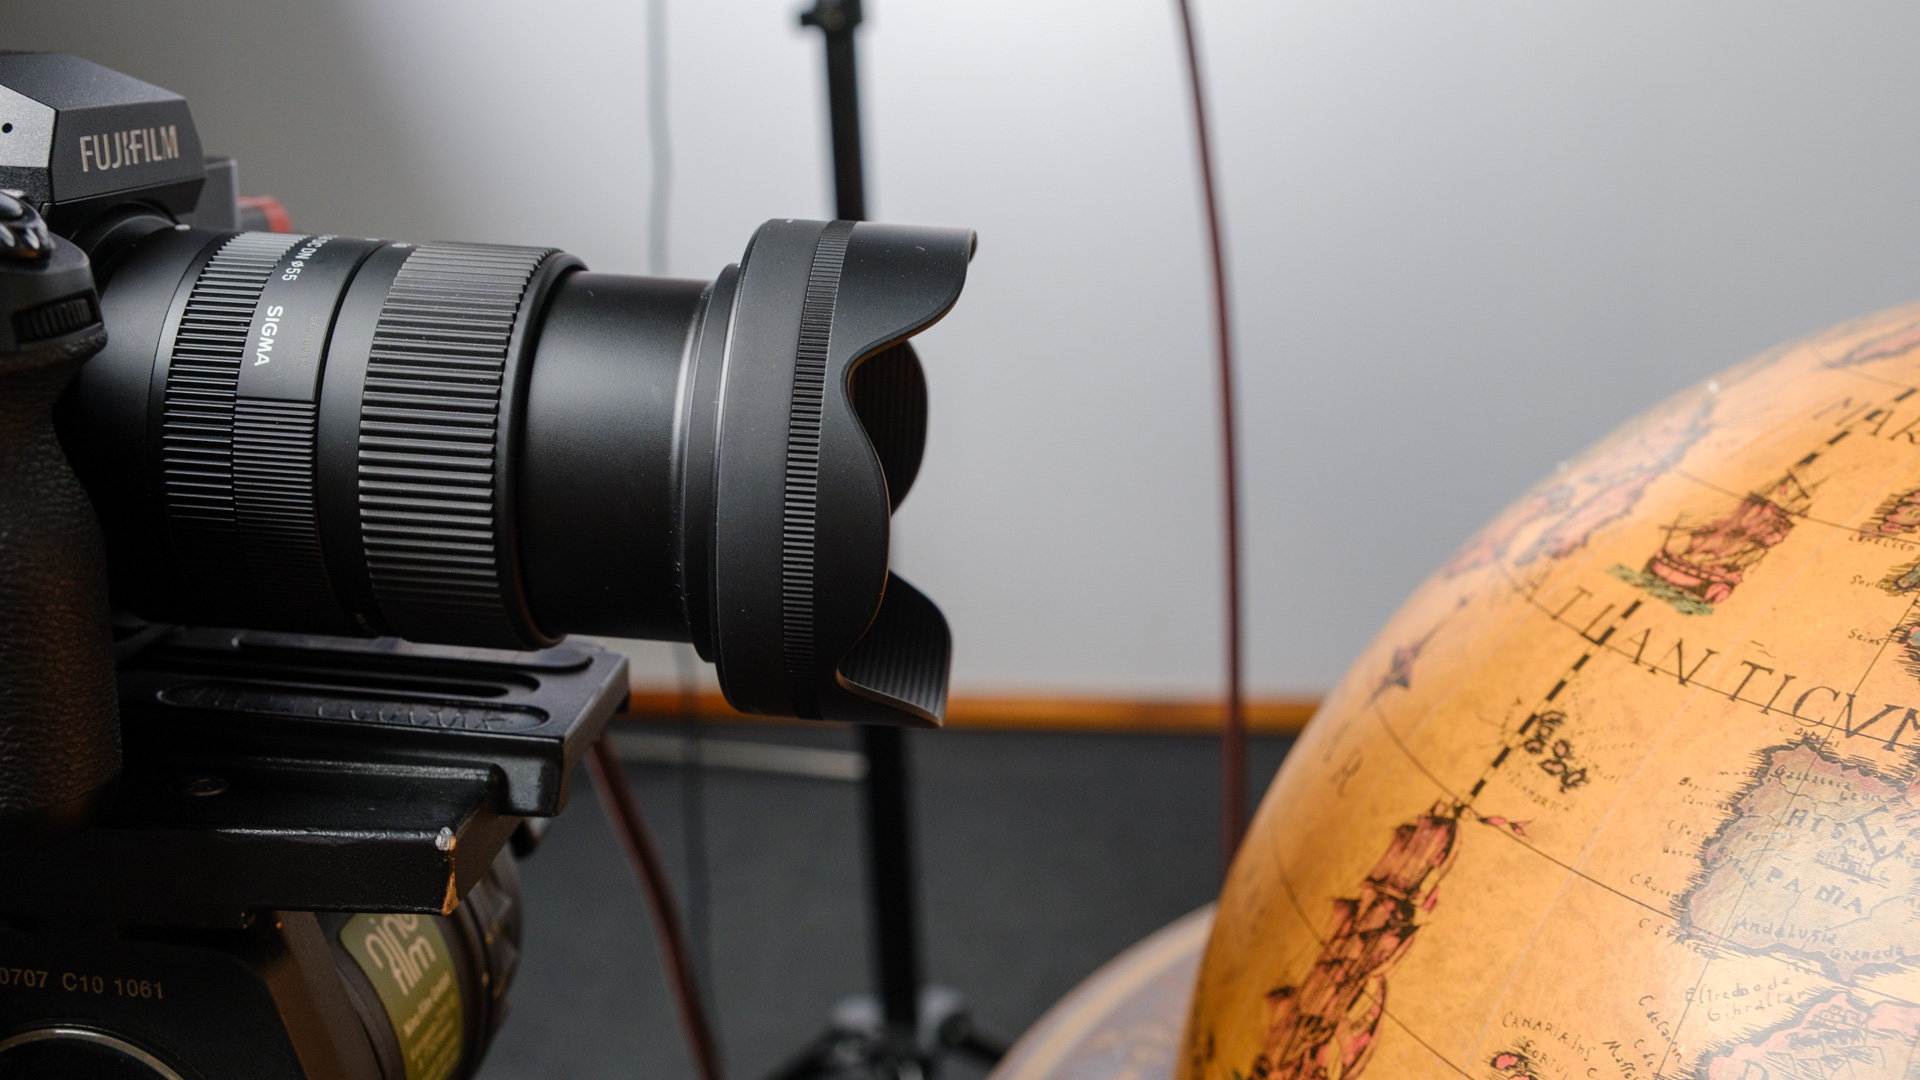 SIGMA 18-50mm f2.8 Lens for FUJIFILM Cameras - Review and Bonus